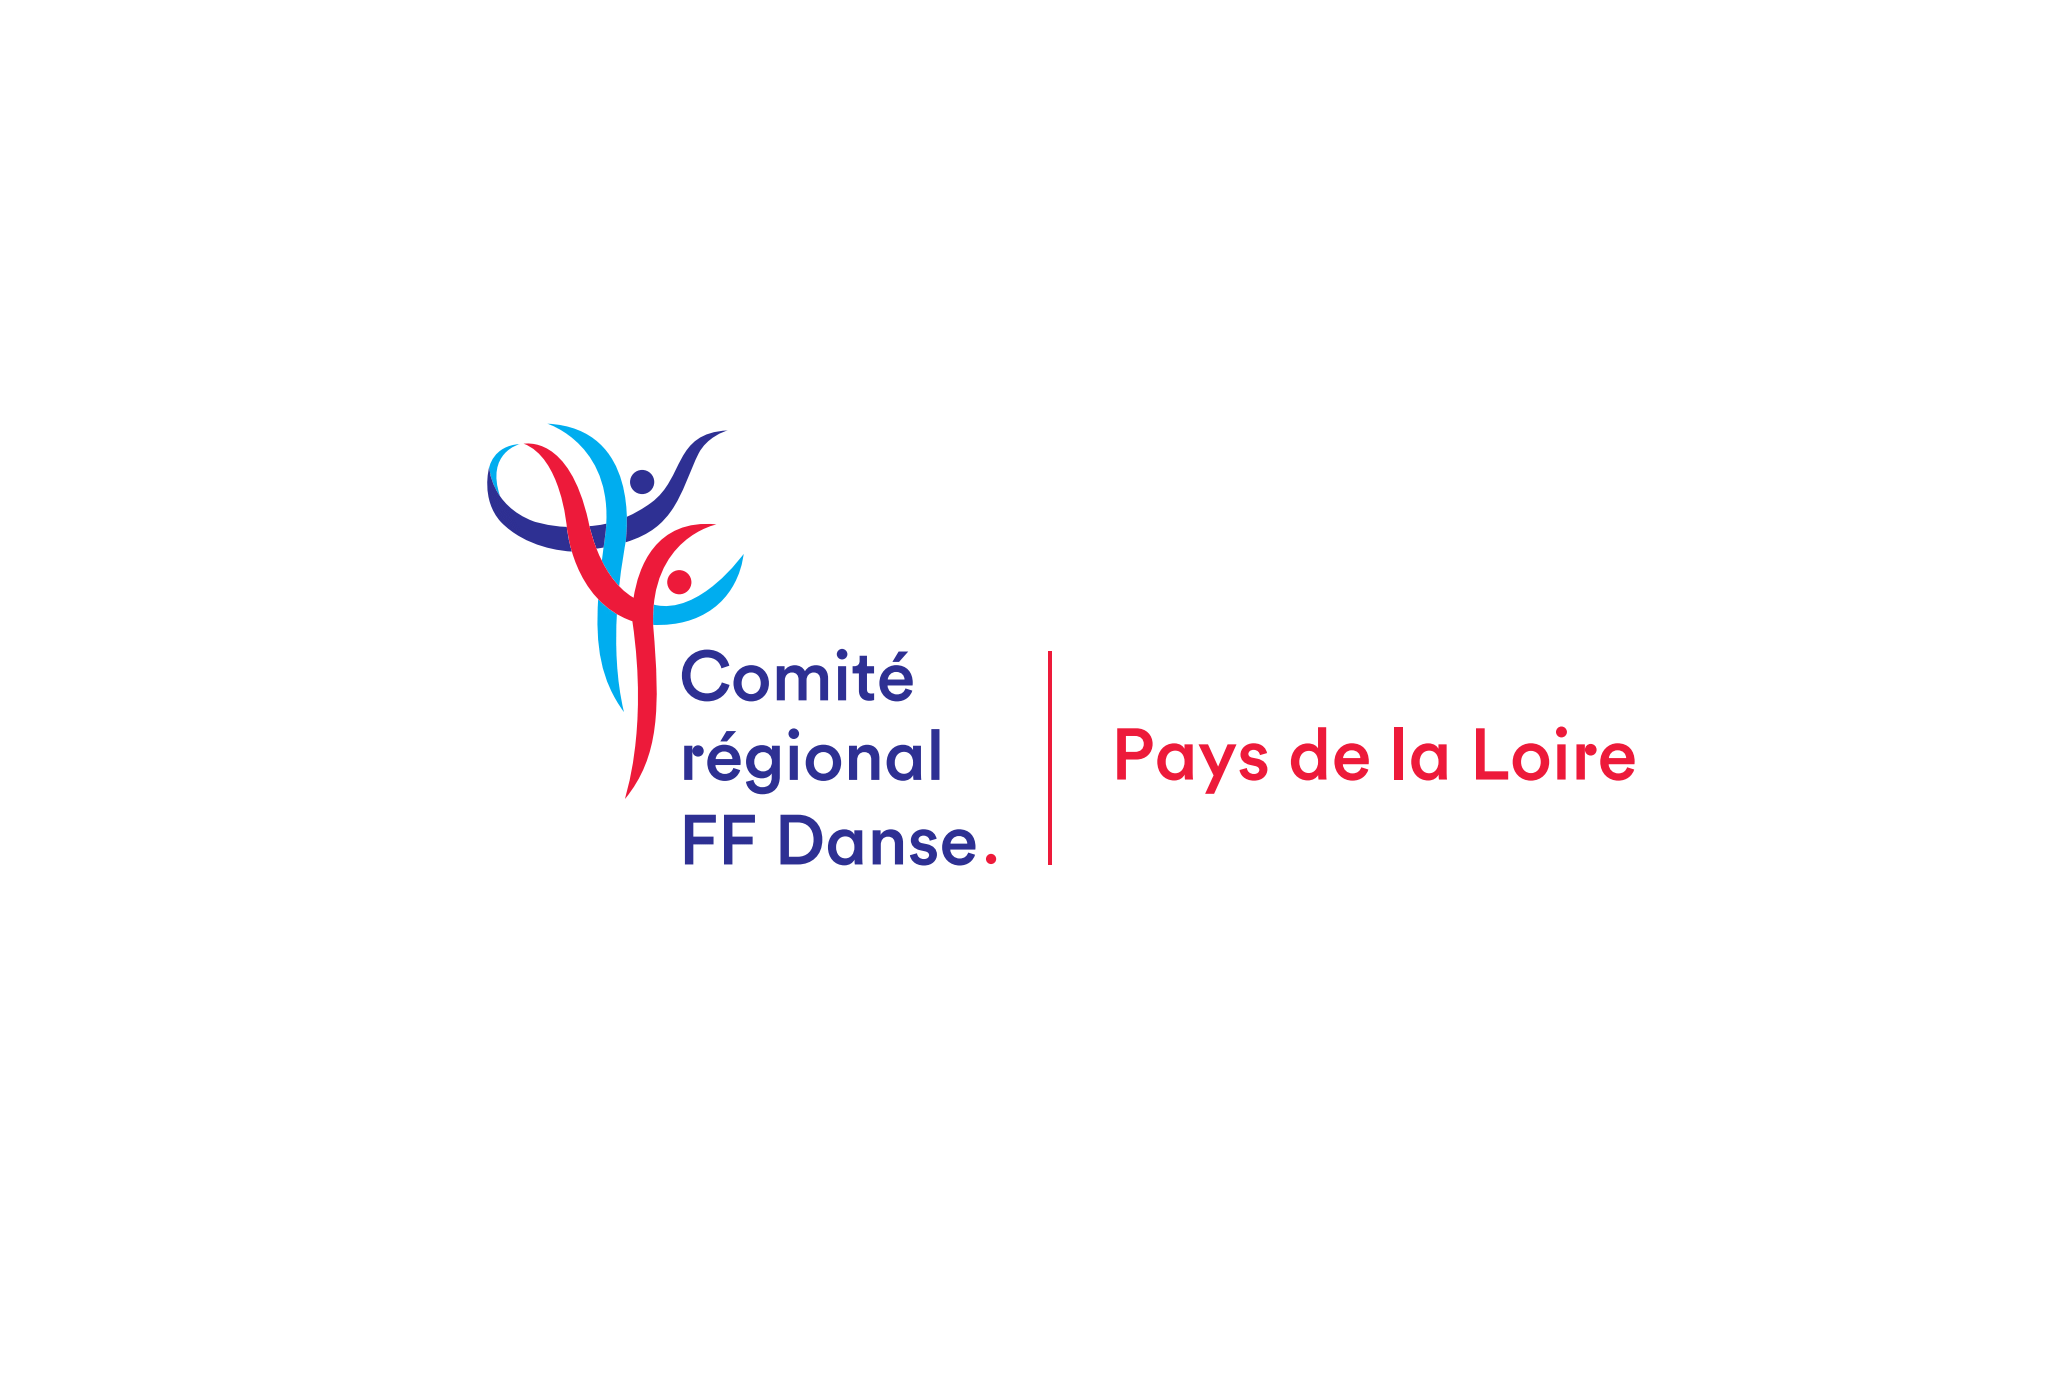 Comité Régional de la Fédération Française de Danse des Pays de la Loire